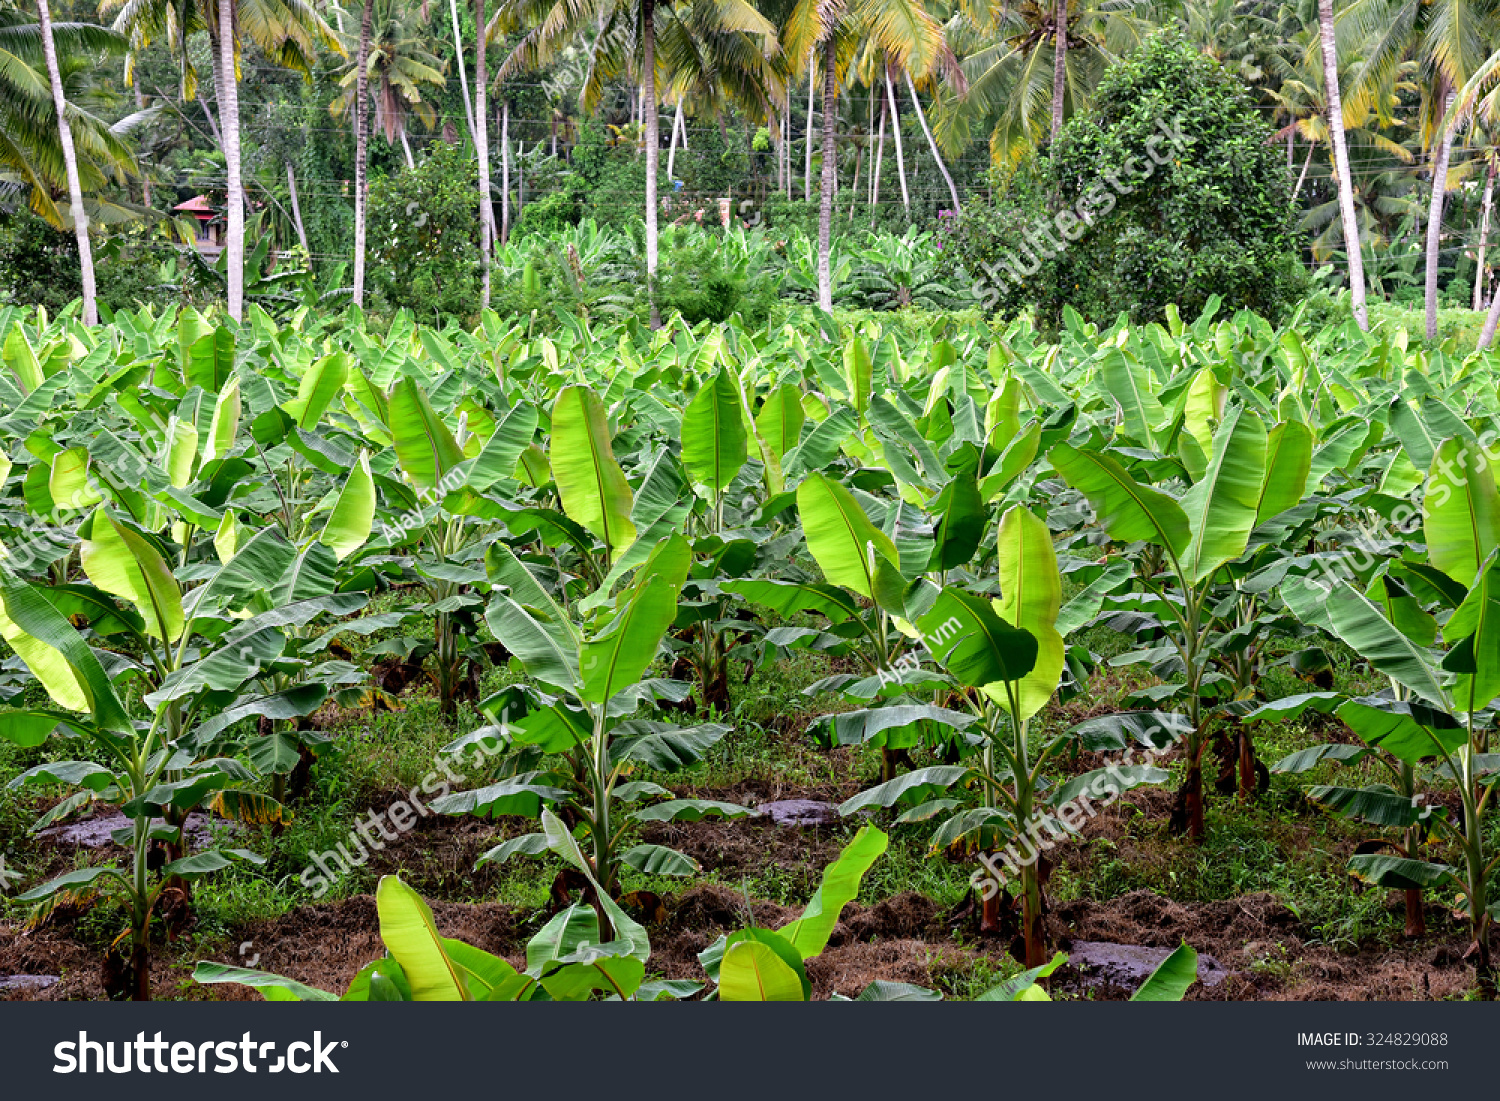 Banana Plantation Banana Farm young Banana Plants Stock Photo 324829088 ...